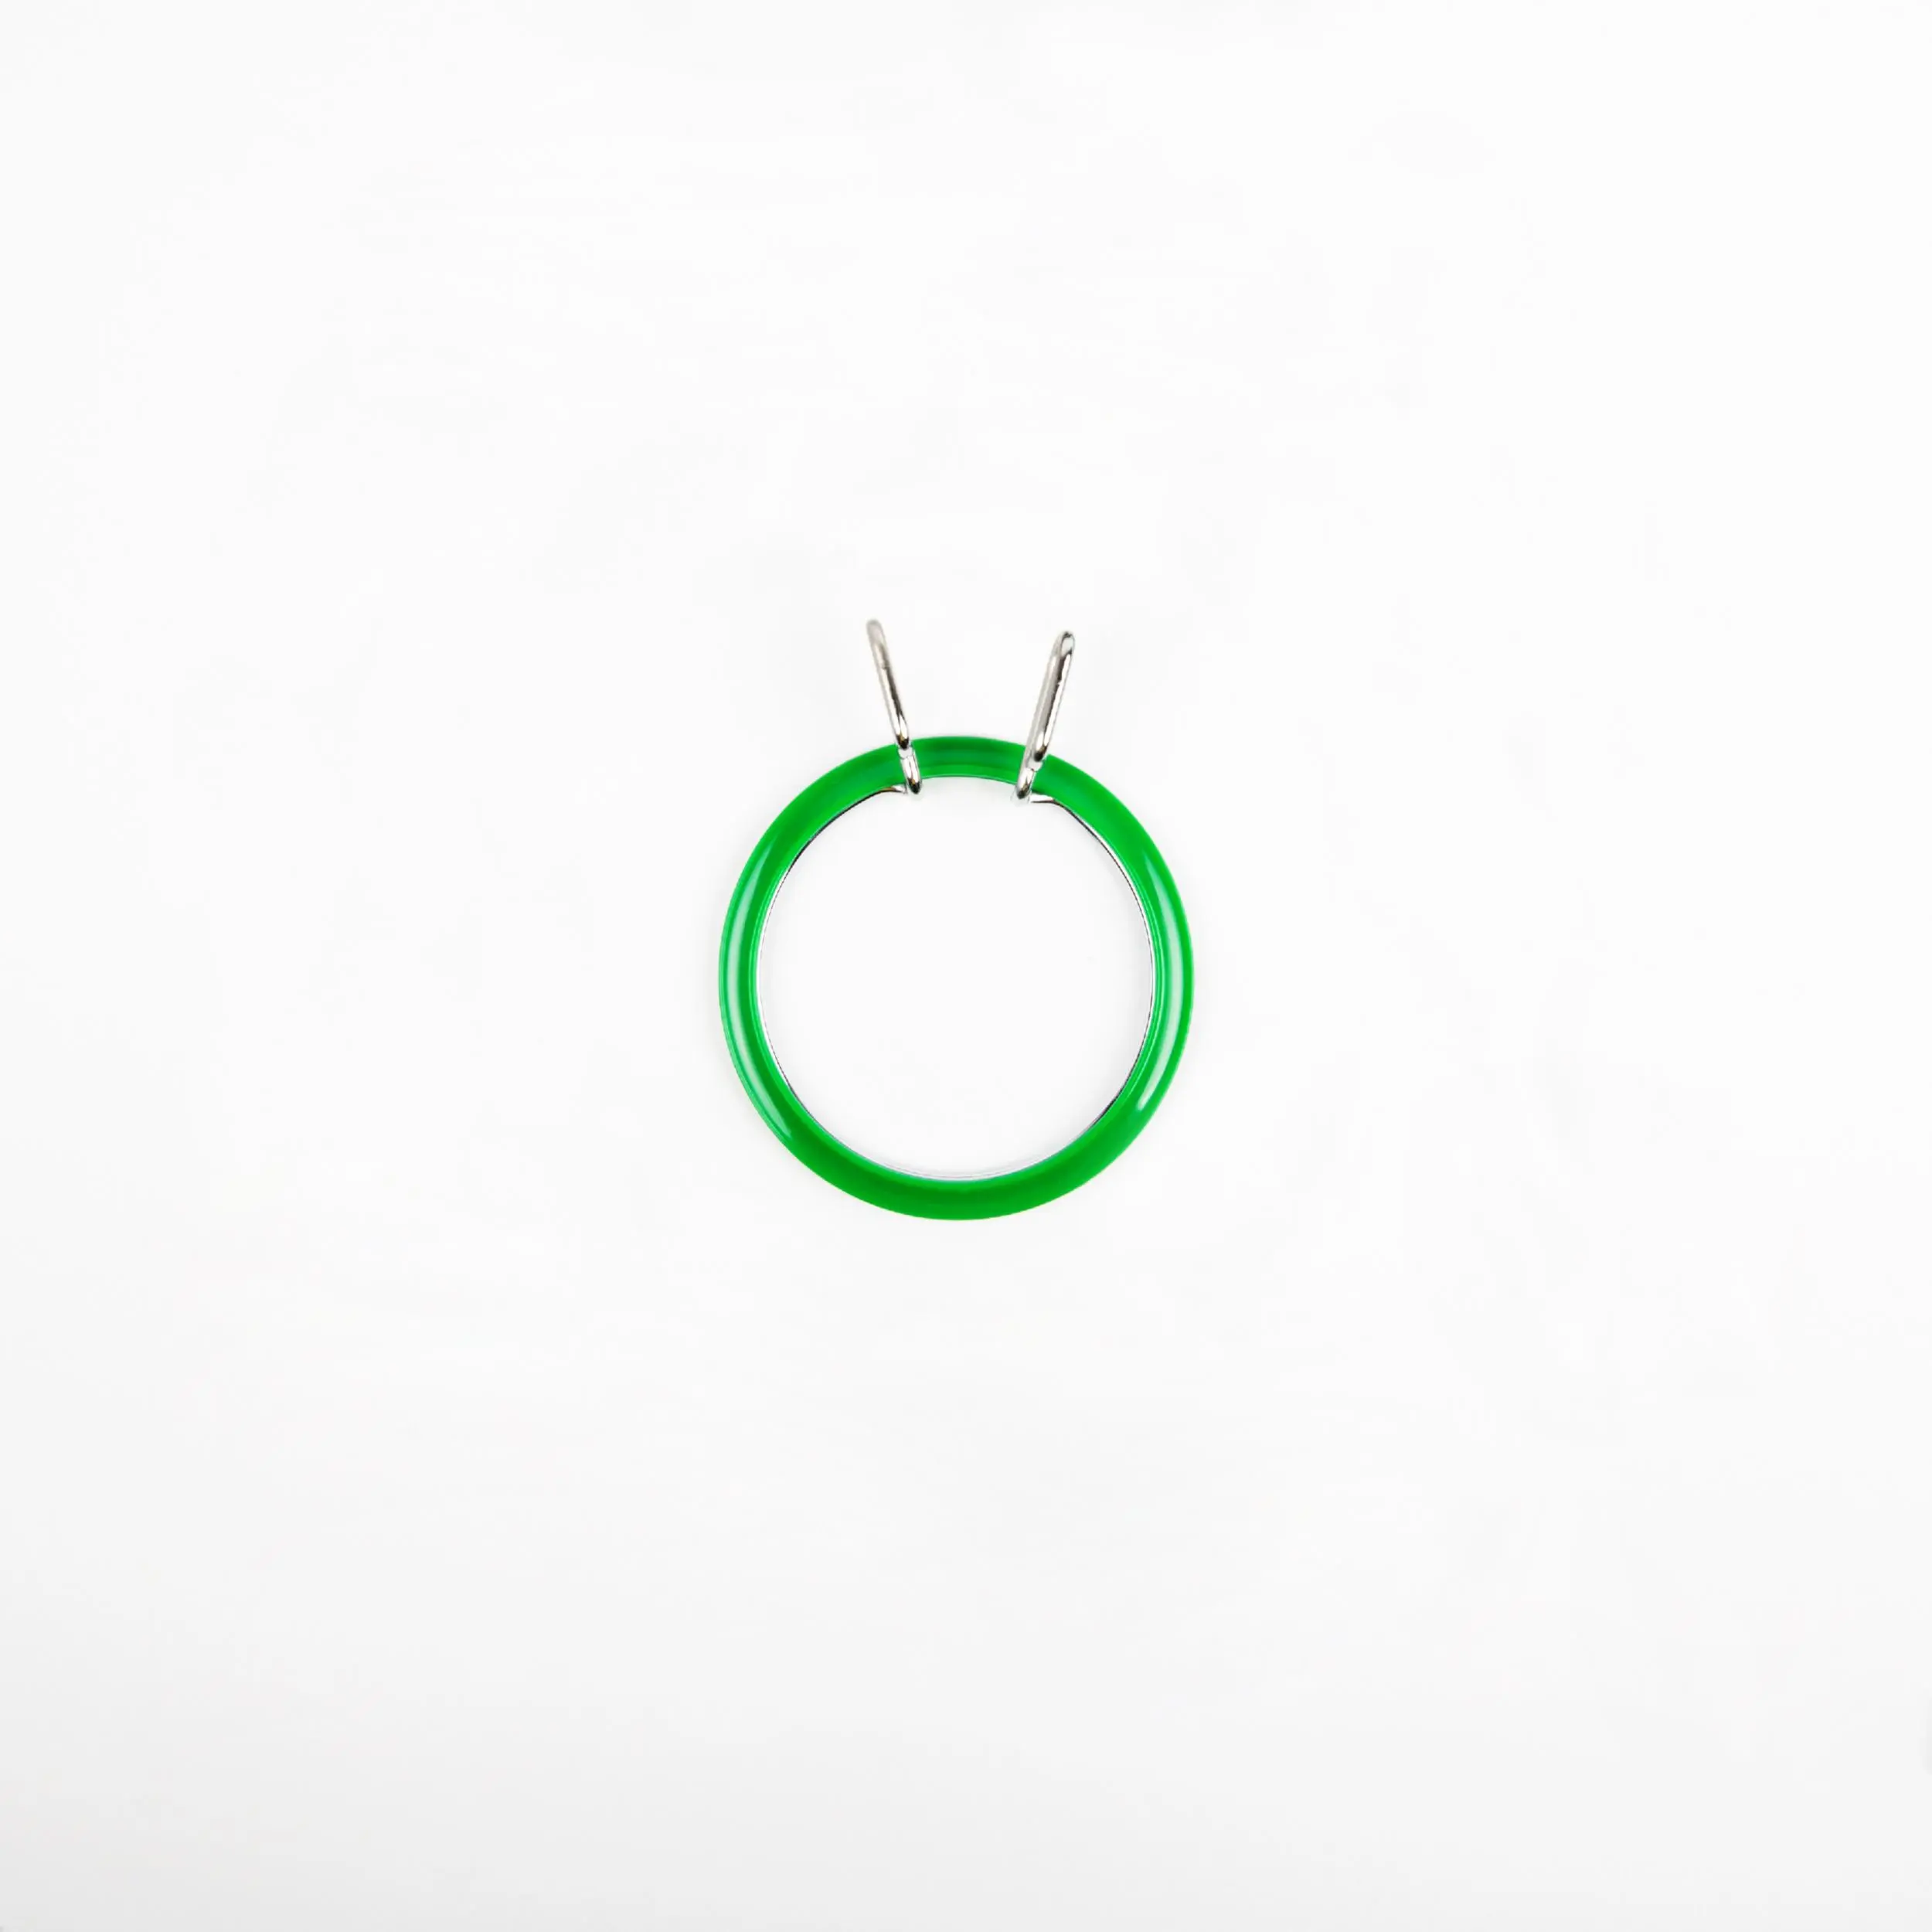 160-3/зелені Пяльці Nurge пружинні для вишивання та штопки, висота обідка 2,6мм, діаметр 58мм